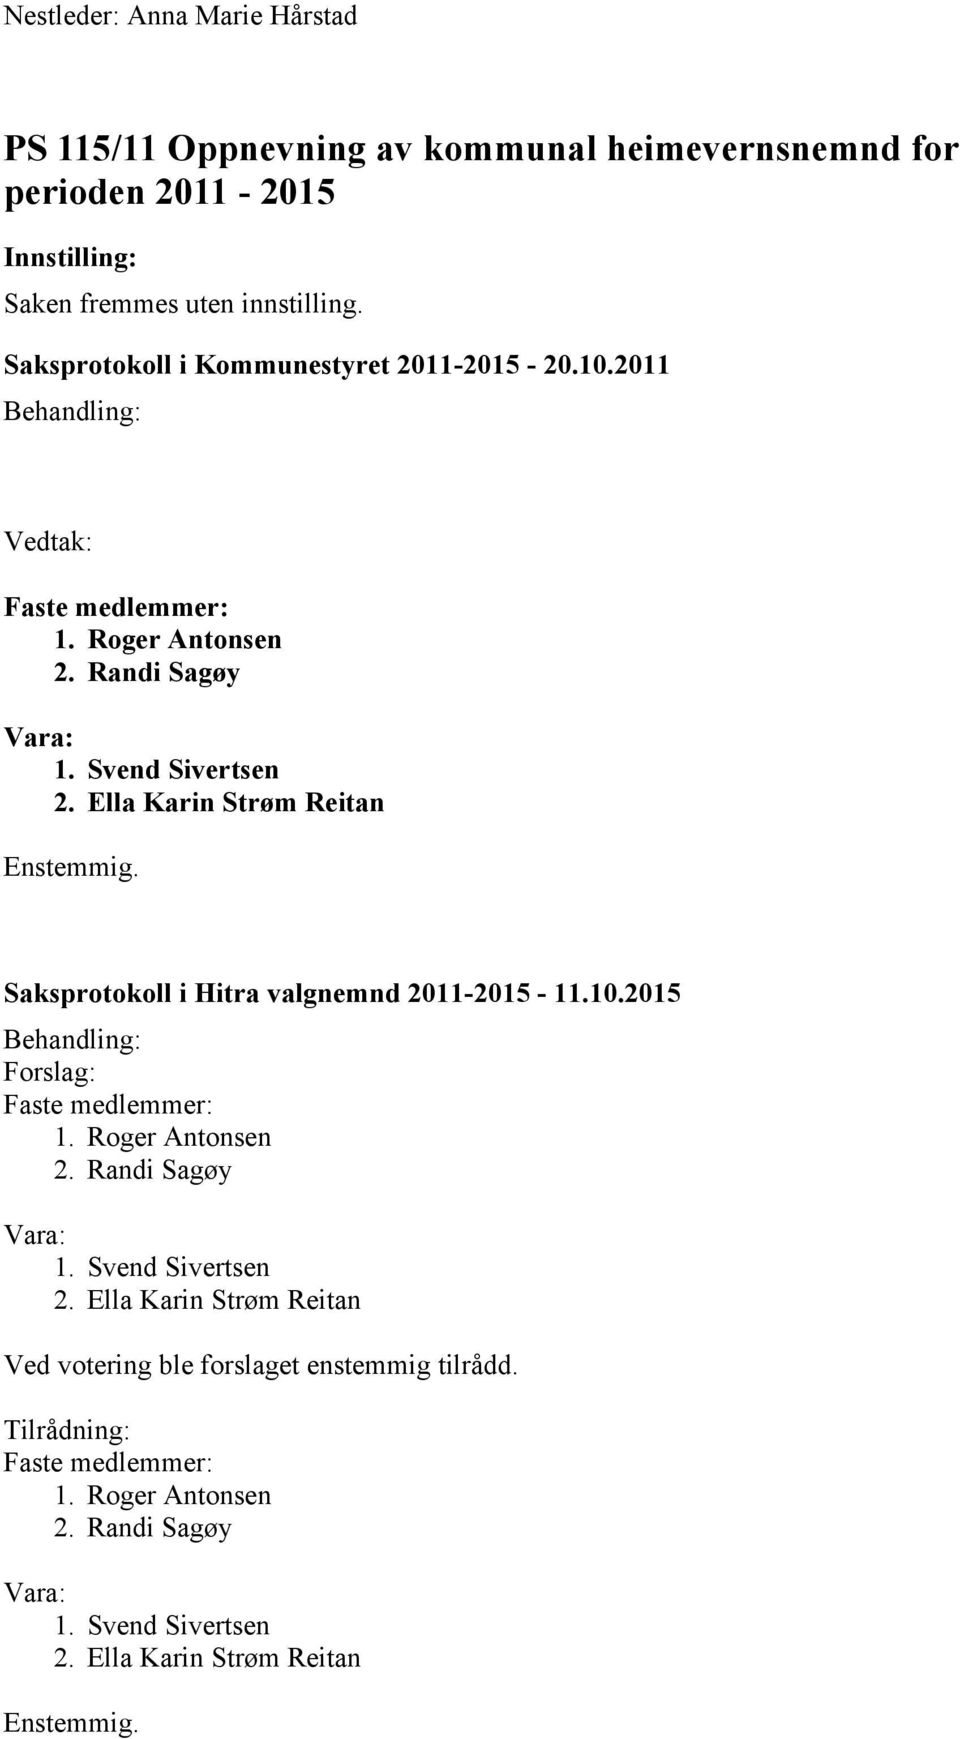 Saksprotokoll i Hitra valgnemnd 2011-2015 - 11.10.2015 Forslag: 1. Roger Antonsen 2. Randi Sagøy 1. Svend Sivertsen 2.